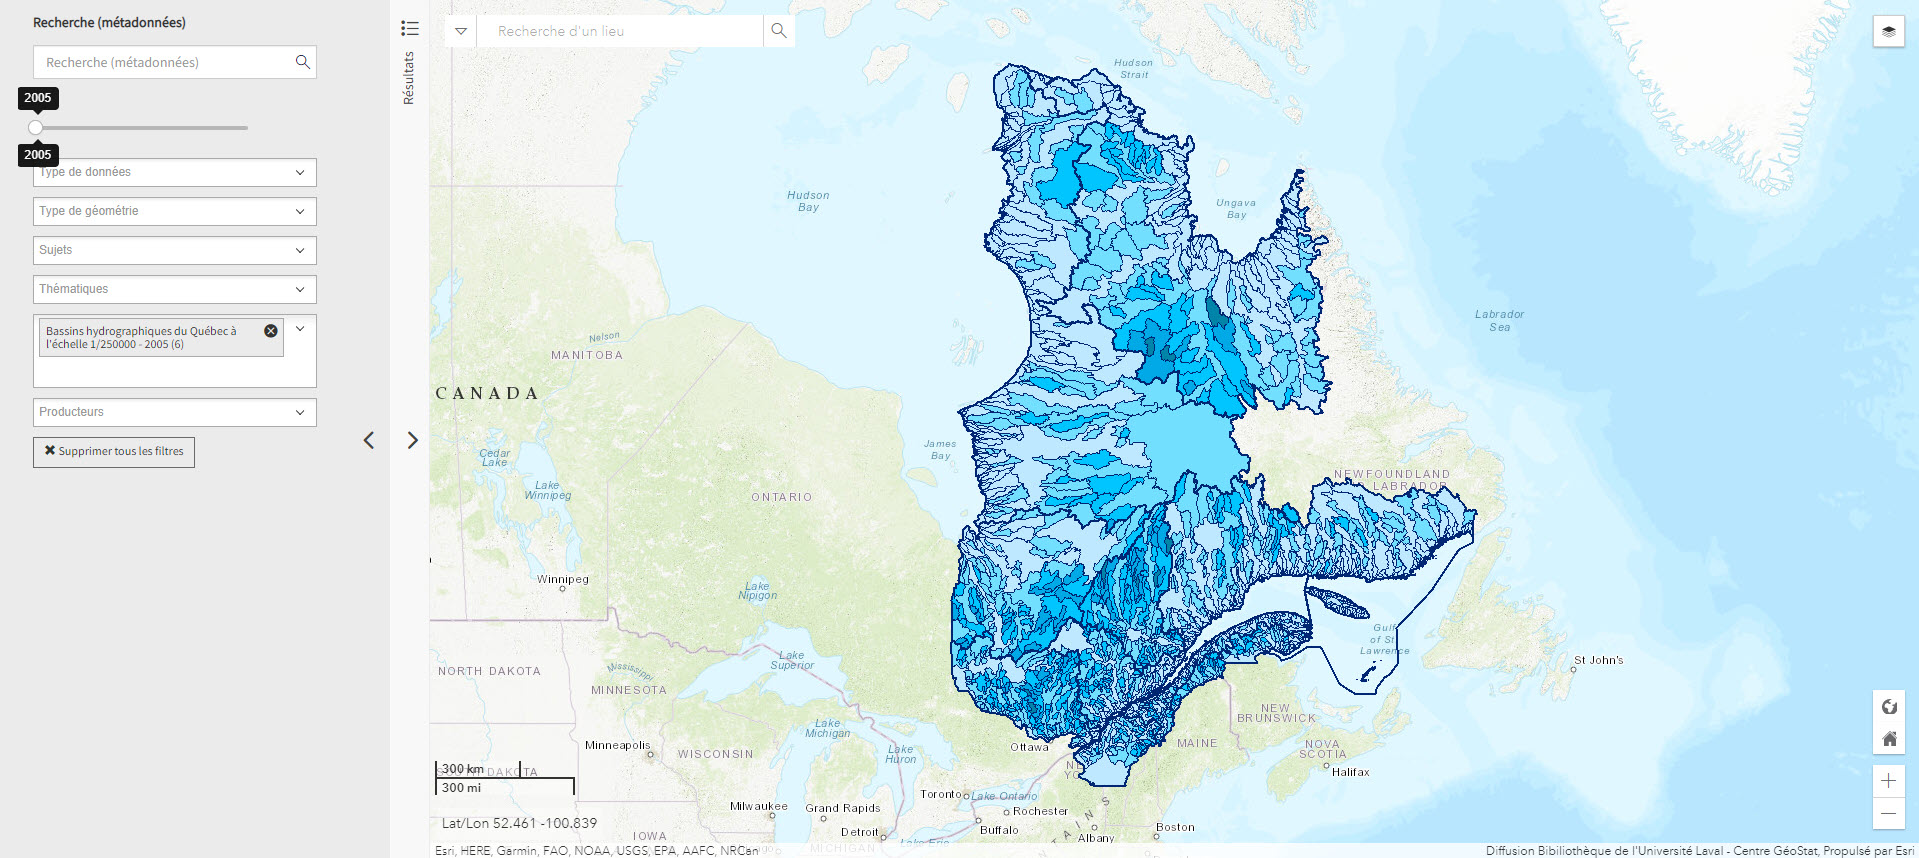 Bassins hydrographiques du Québec à l’échelle 1/250000 (Géoindex)